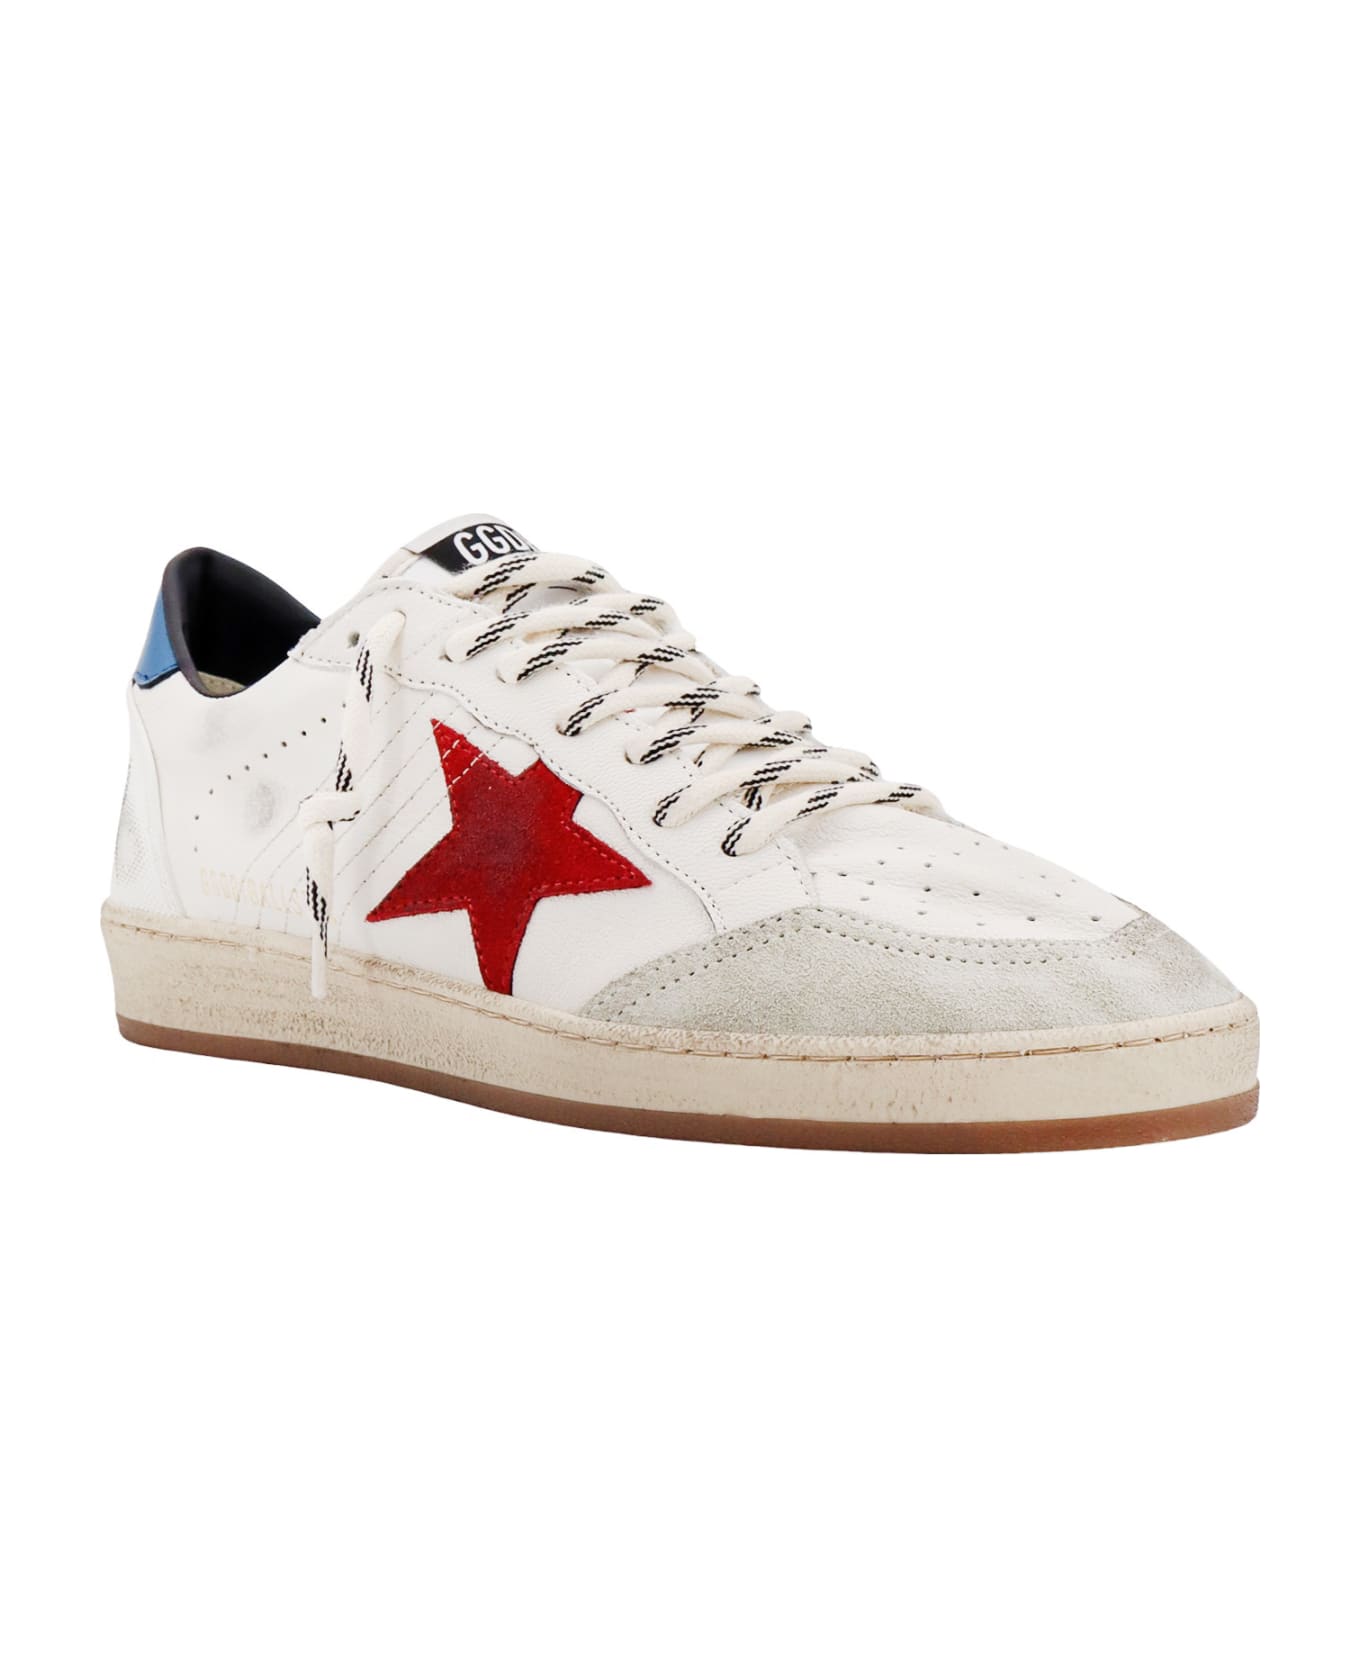 Golden Goose Ball Star Sneakers - White